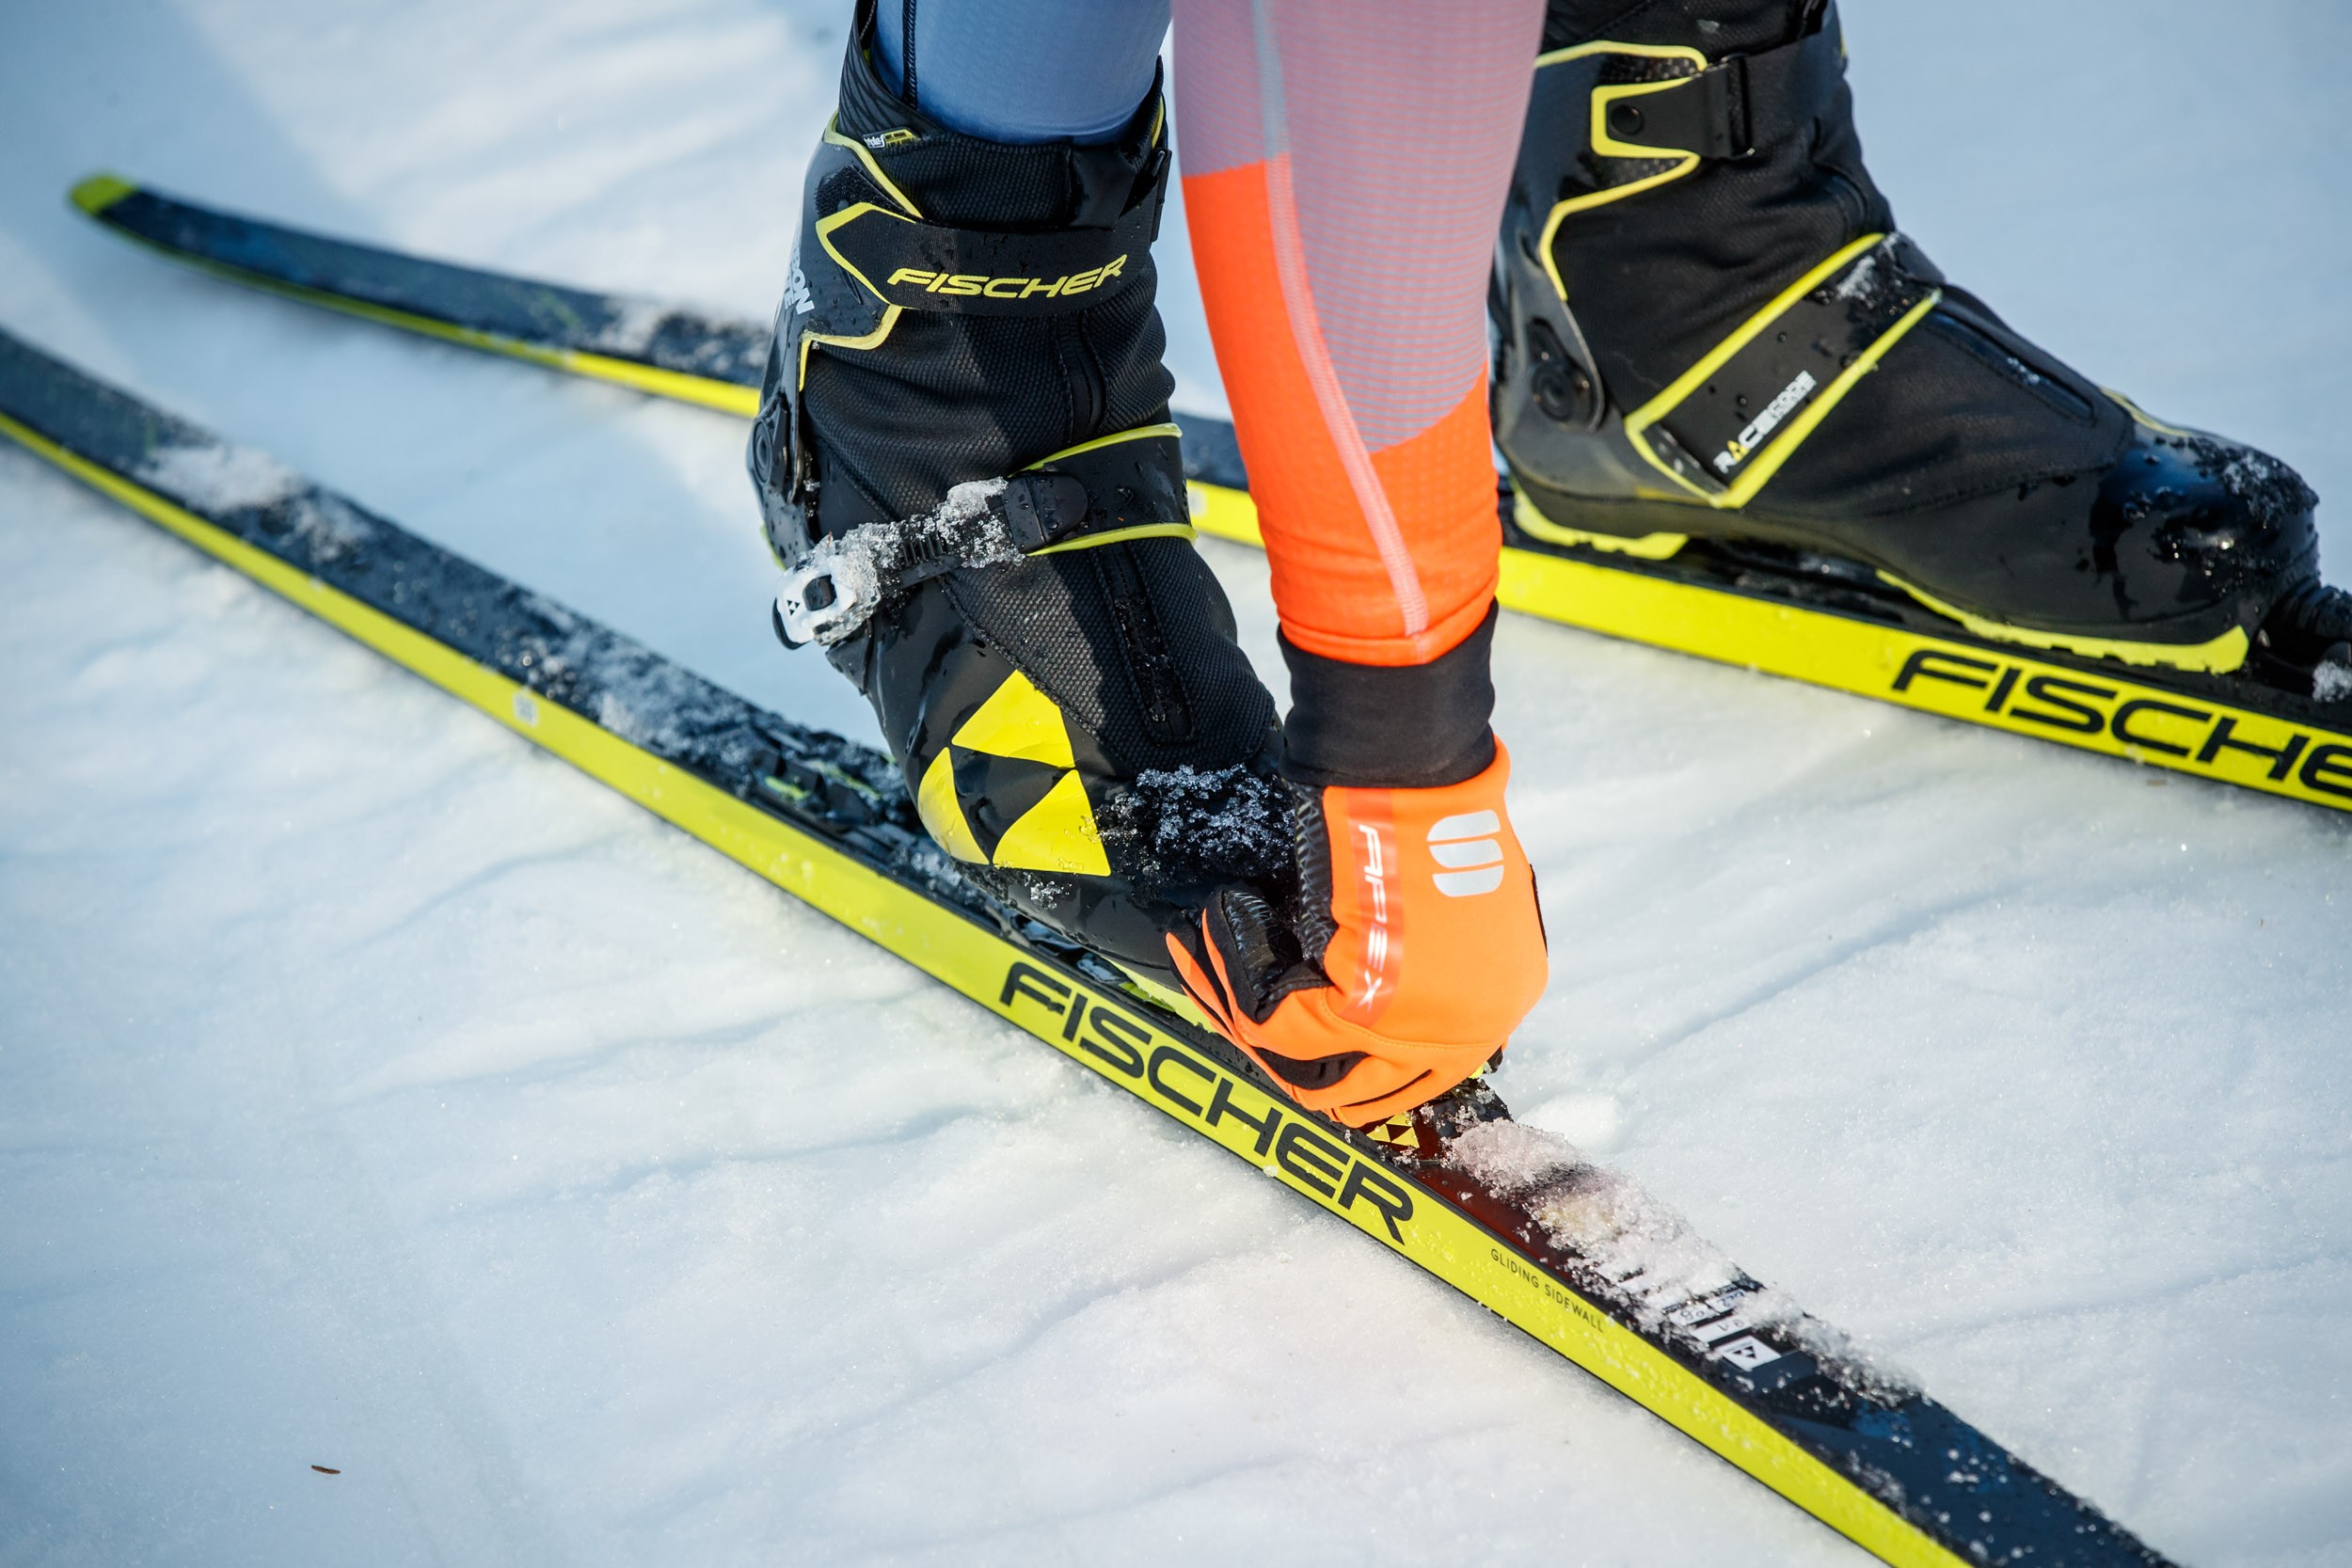 Einsteiger-Guide Skilanglauf